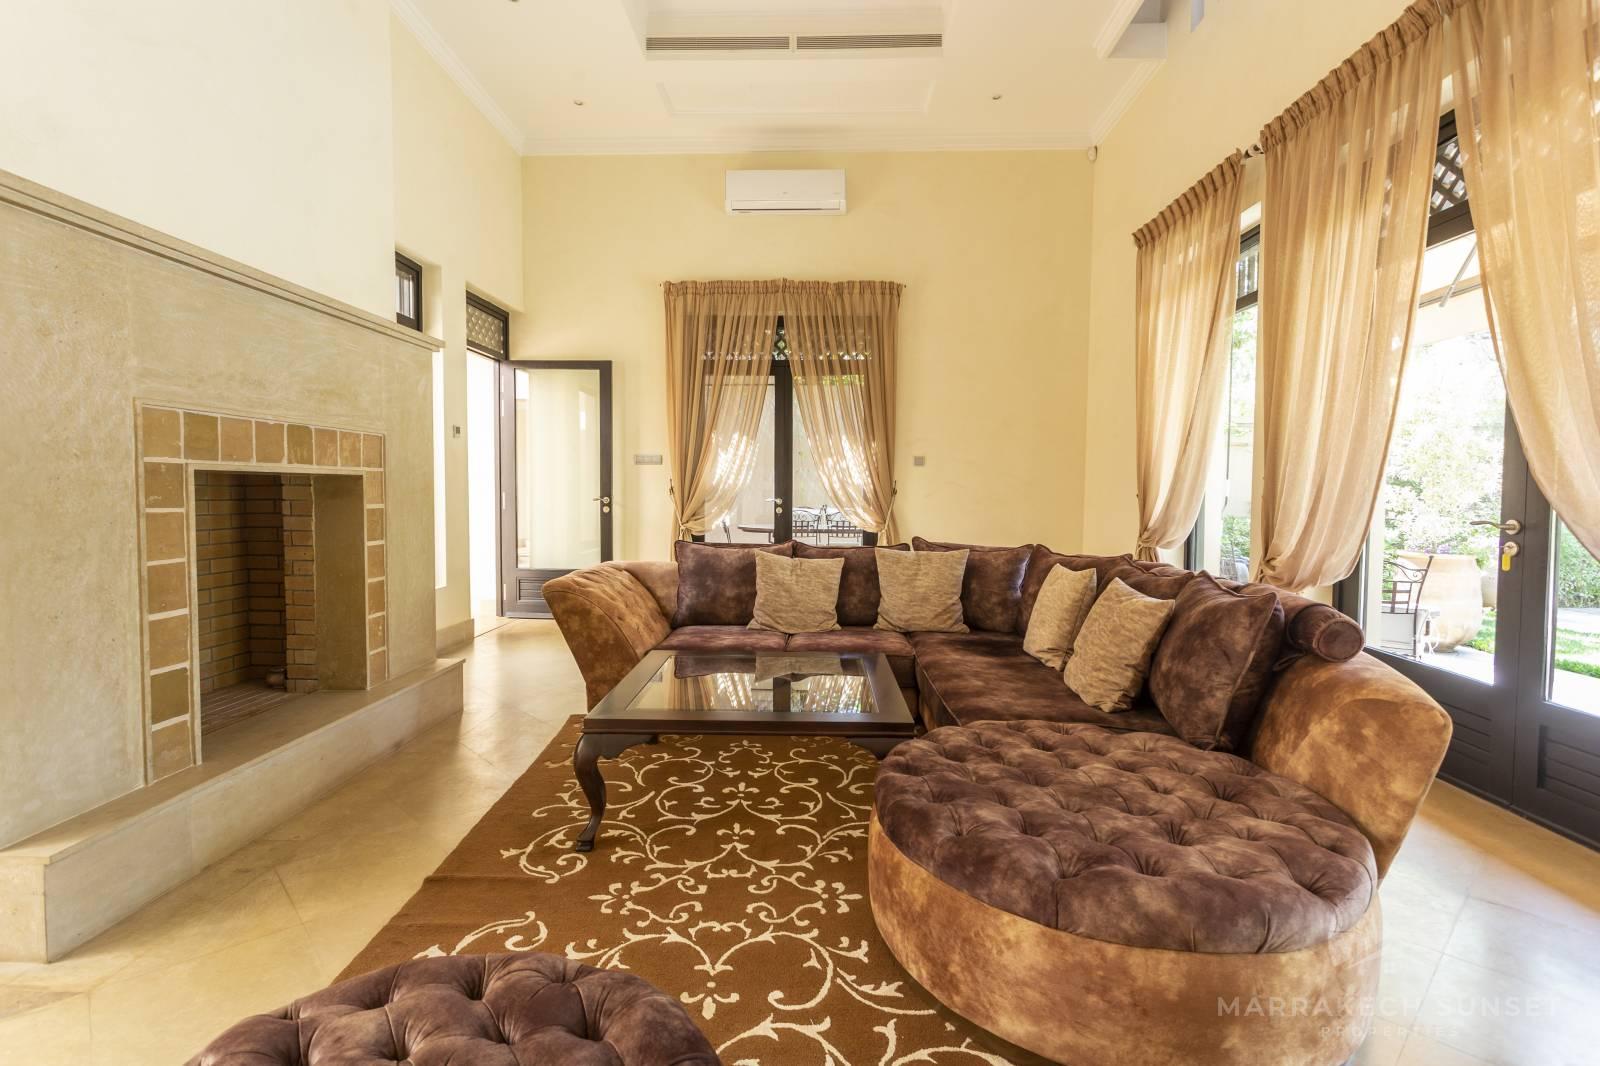 Villa de luxe unique et moderne de 02 chambres à vendre à Marrakech dans un complexe résidentiel